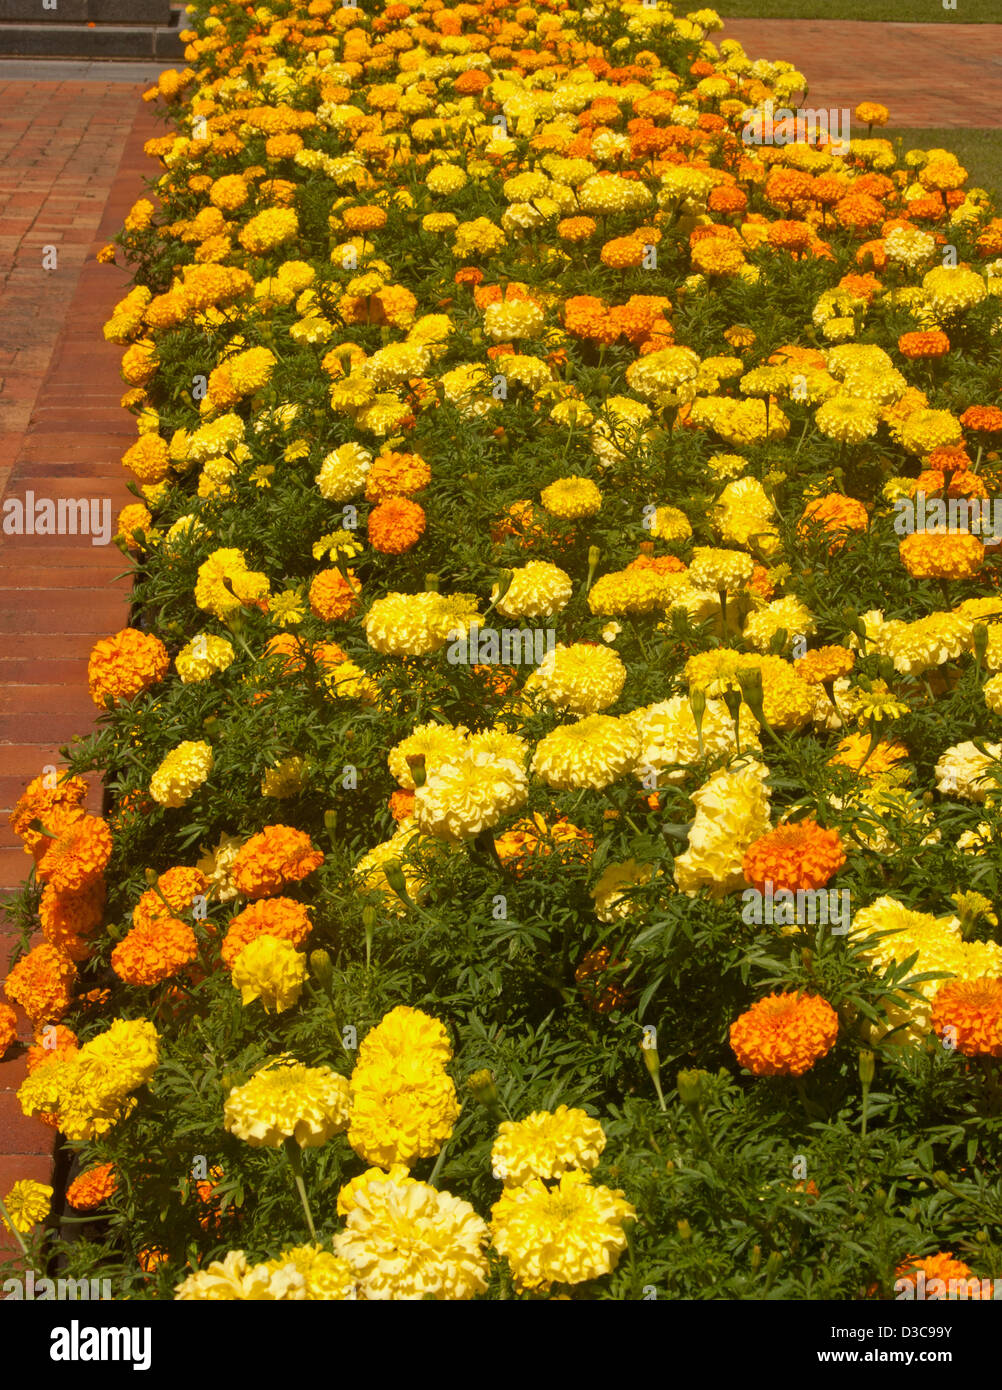 Lit de jardin avec de grands pans d'un jaune vif et orange fleurs d'œillets d'Afrique - Tagetes erecta hybride - plantes annuelles populaires Banque D'Images